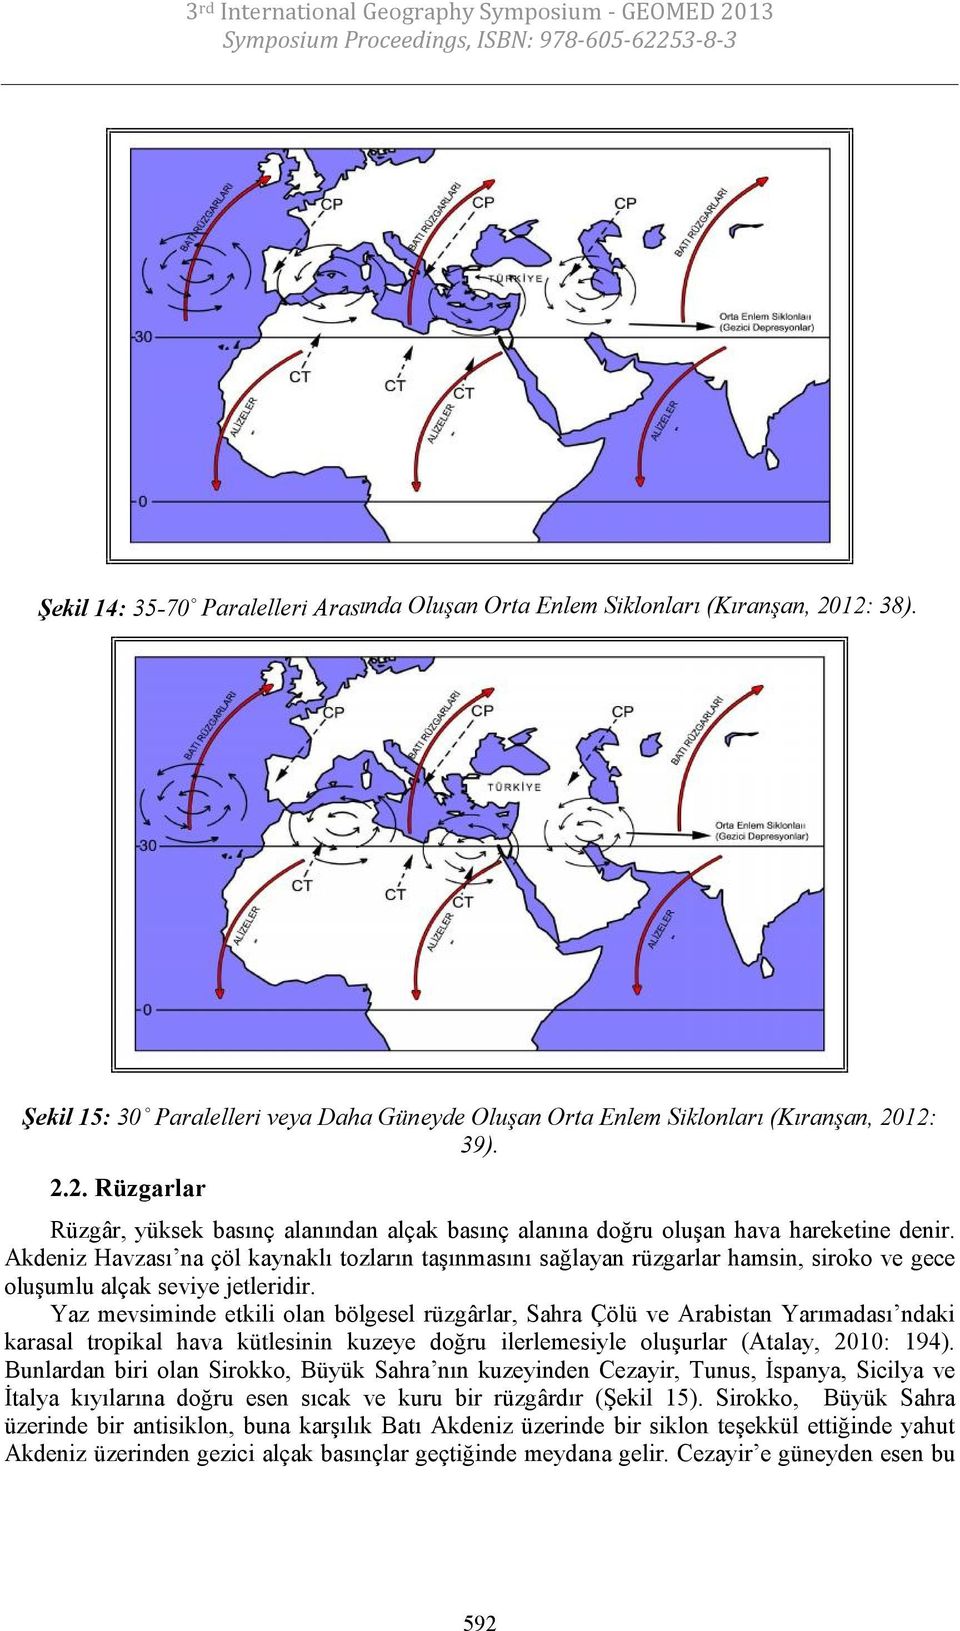 Yaz mevsiminde etkili olan bölgesel rüzgârlar, Sahra Çölü ve Arabistan Yarımadası ndaki karasal tropikal hava kütlesinin kuzeye doğru ilerlemesiyle oluşurlar (Atalay, 2010: 194).